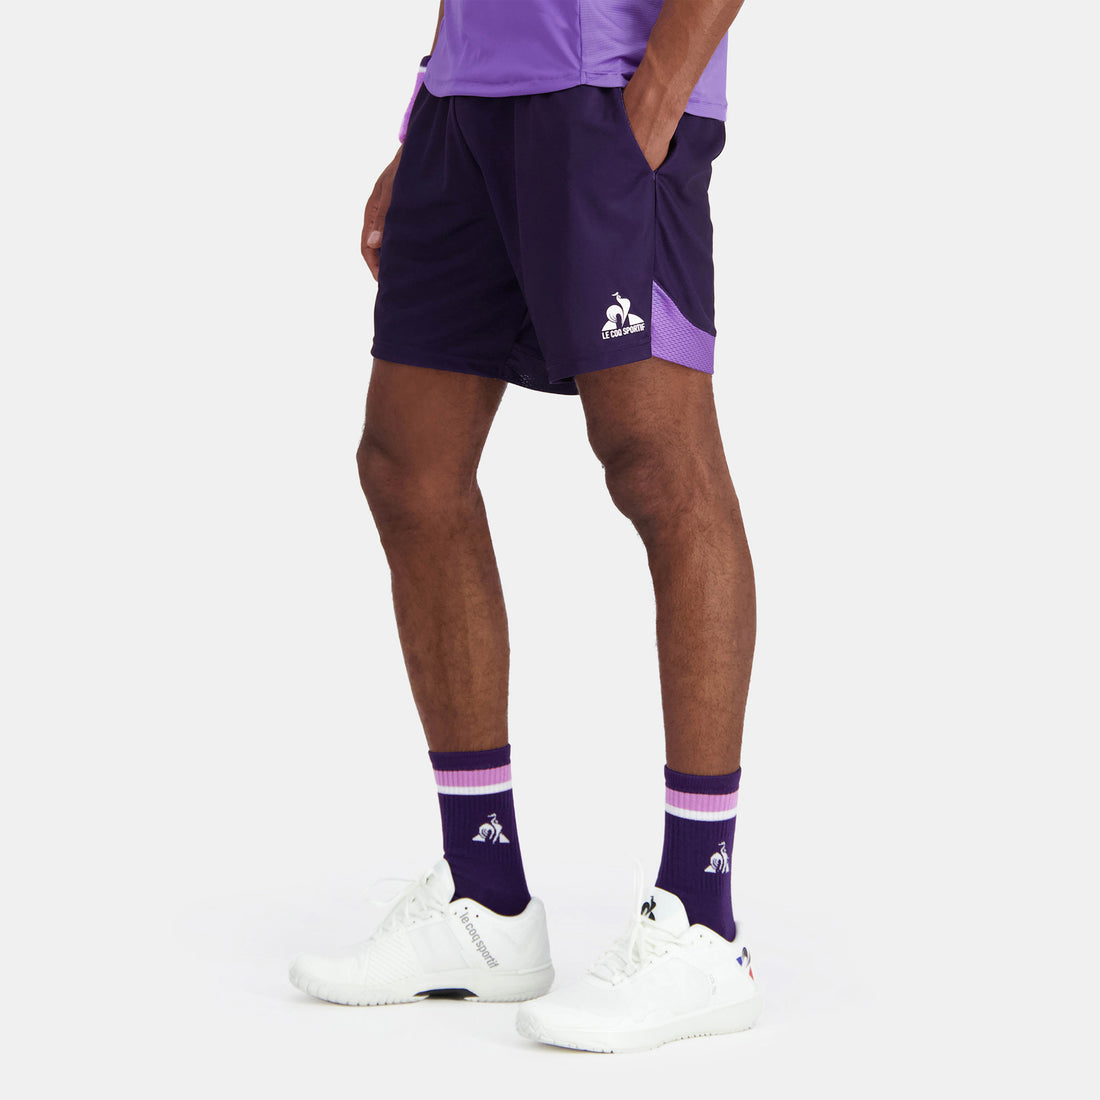 2410519-TENNIS PRO Short 24 N°1 M purple velvet  | Pantalones Cortos Hombre